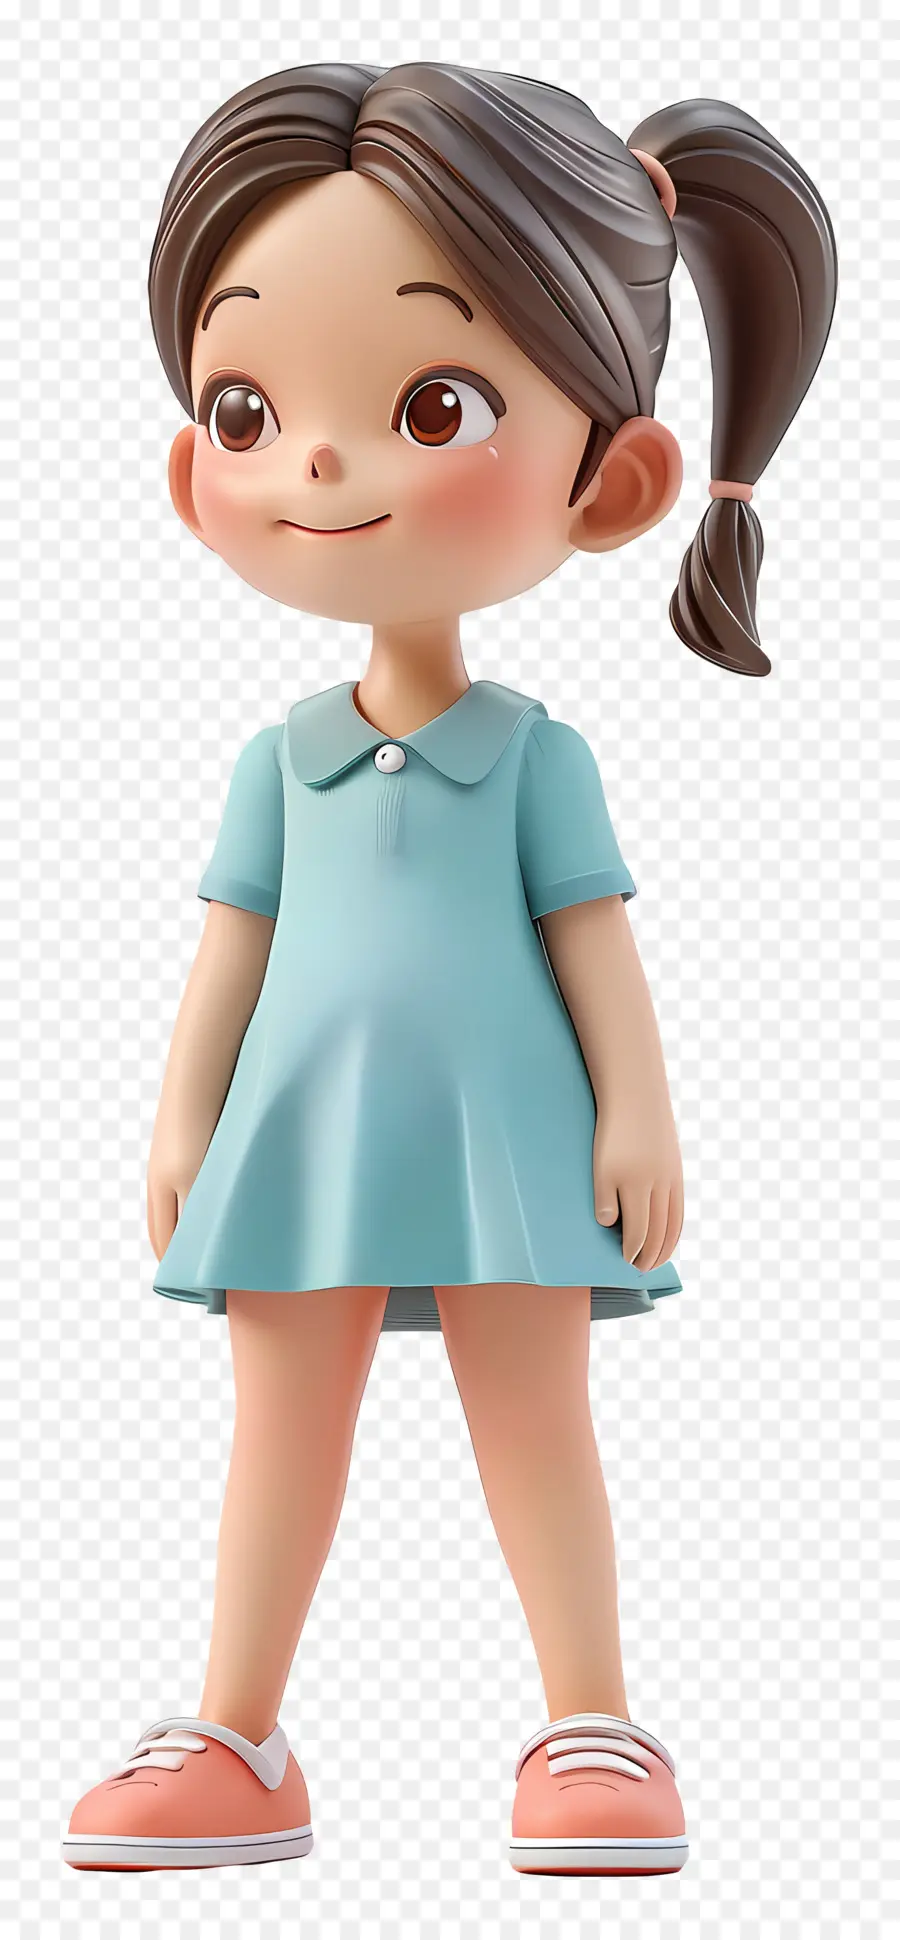 little girl standing cartoon character girl polka dots dress